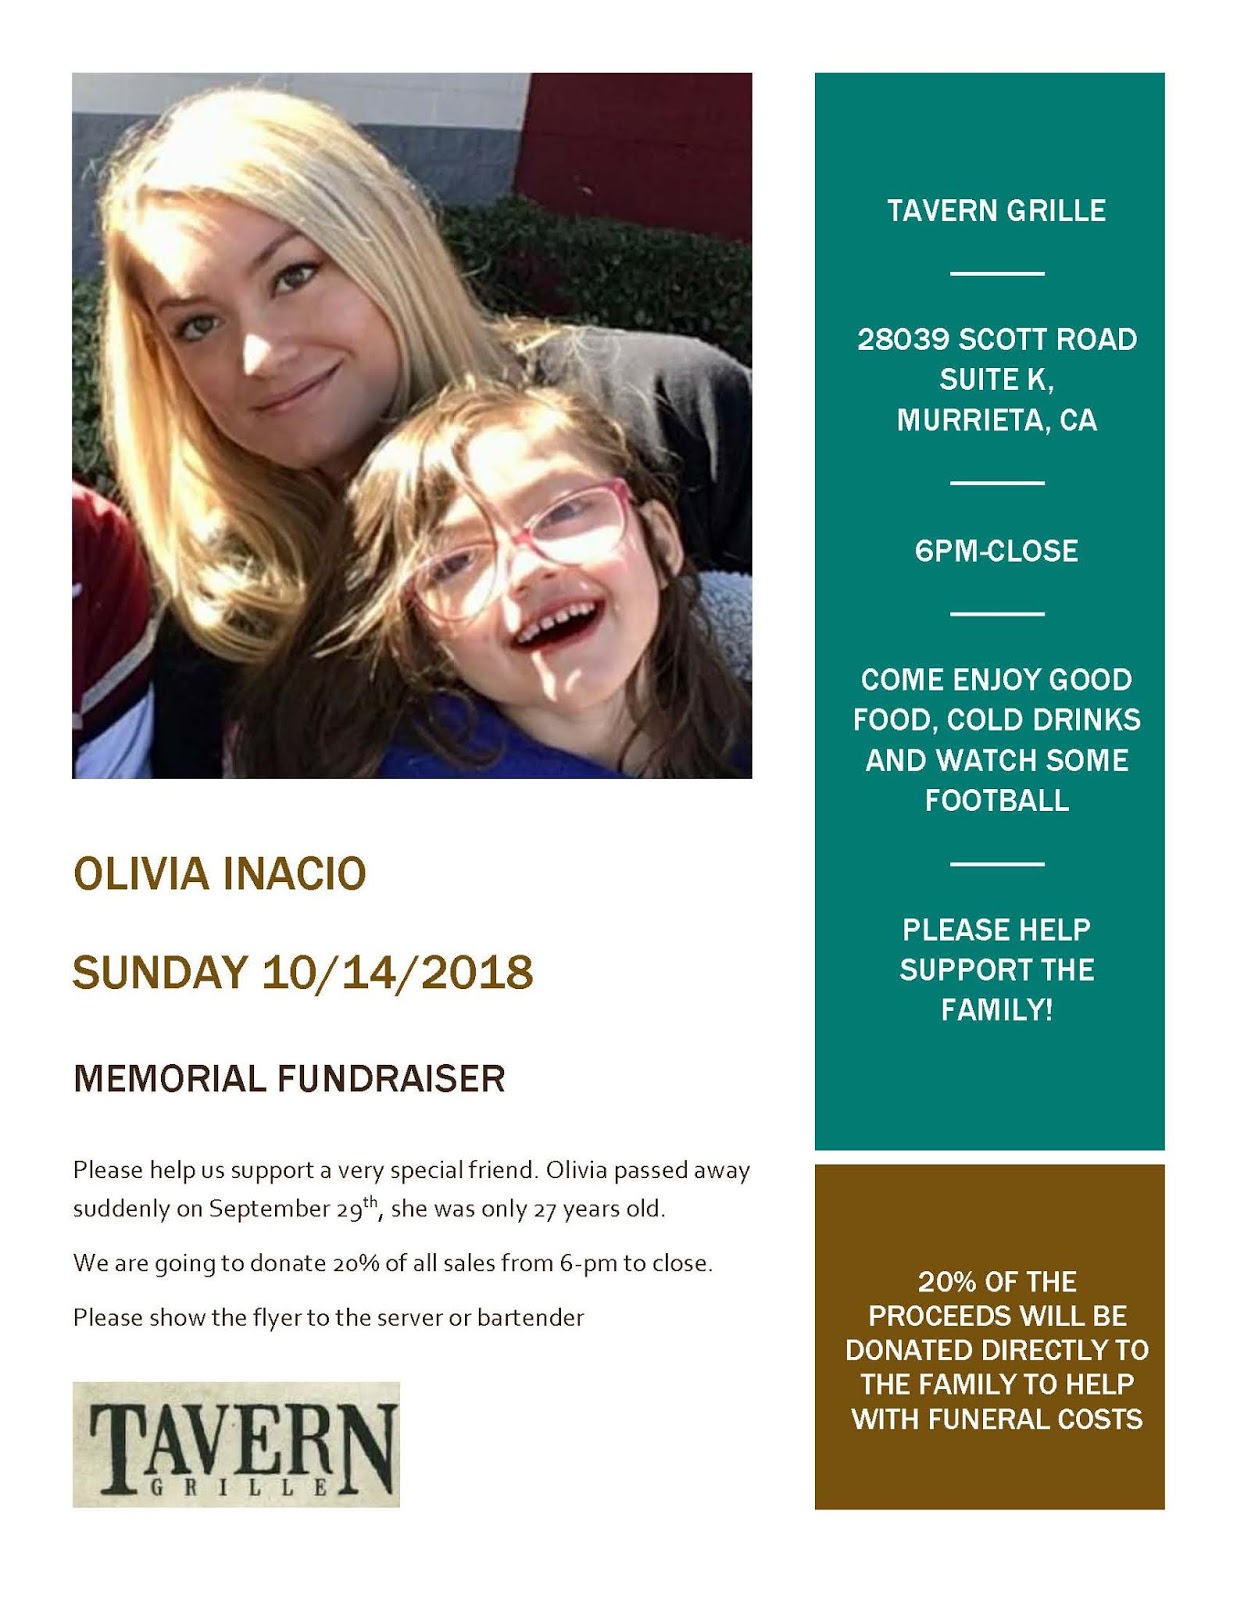 Fundraiser set for family of resident who passed away Menifee 24/7 image